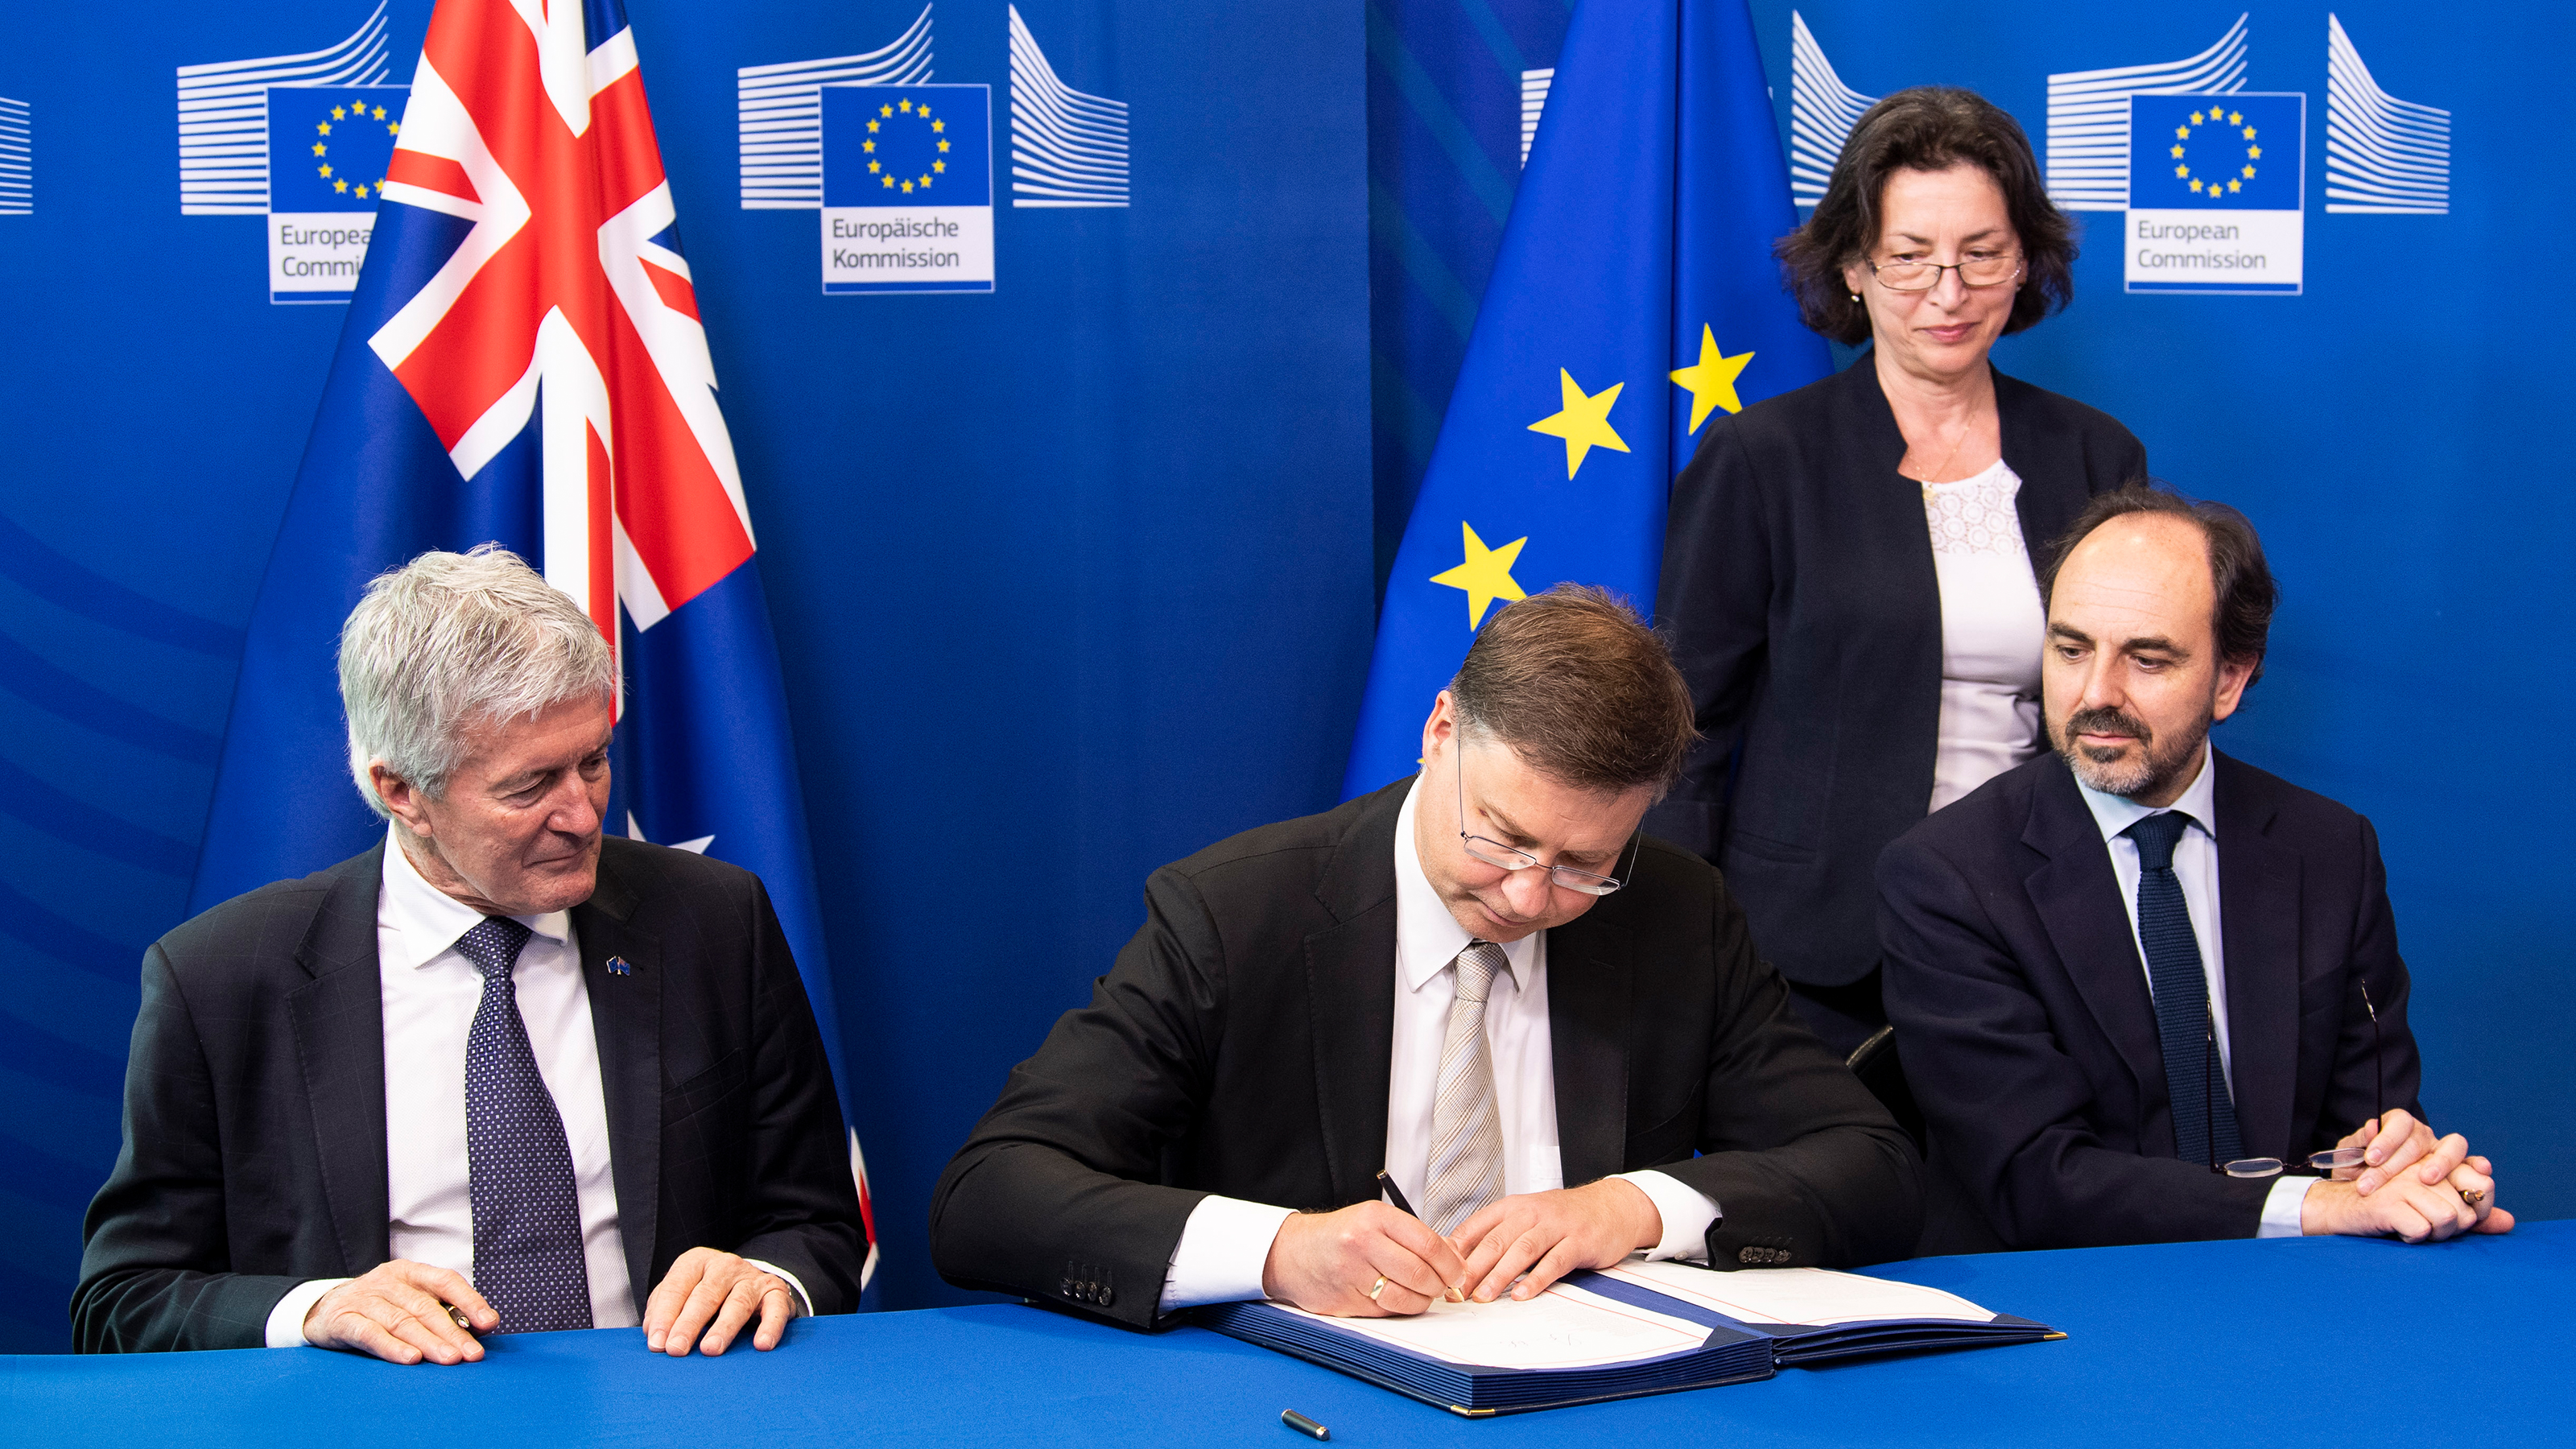 Peron in Anzug sitzt an Tisch und signiert Dokument in Mappe, links und rechts zwei weitere Personen sitzend darauf blickend, im Hintergrund weitere Person stehend vor blauer Wand mit Aufschrift Europäische Kommission